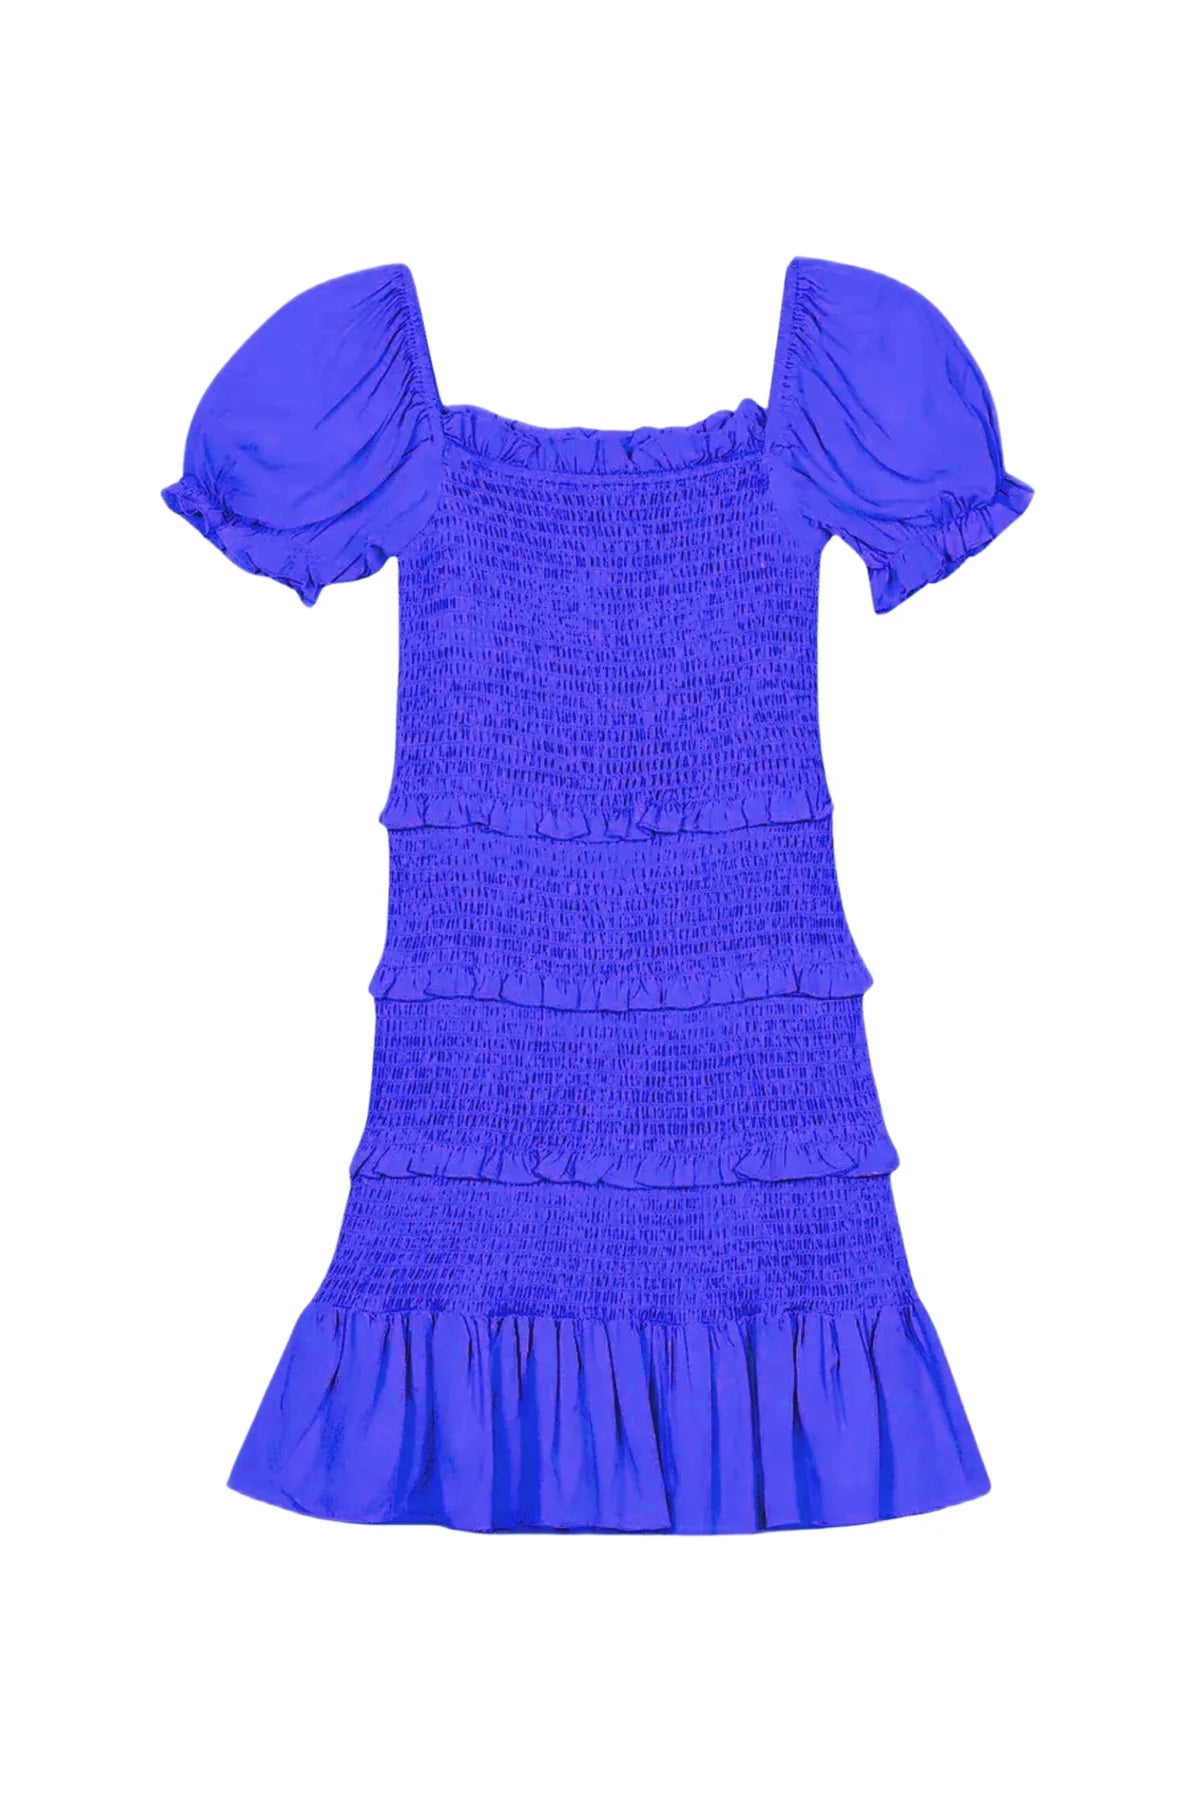 Laila Cobalt Blue Dress (Tweens) - Katiej NYC